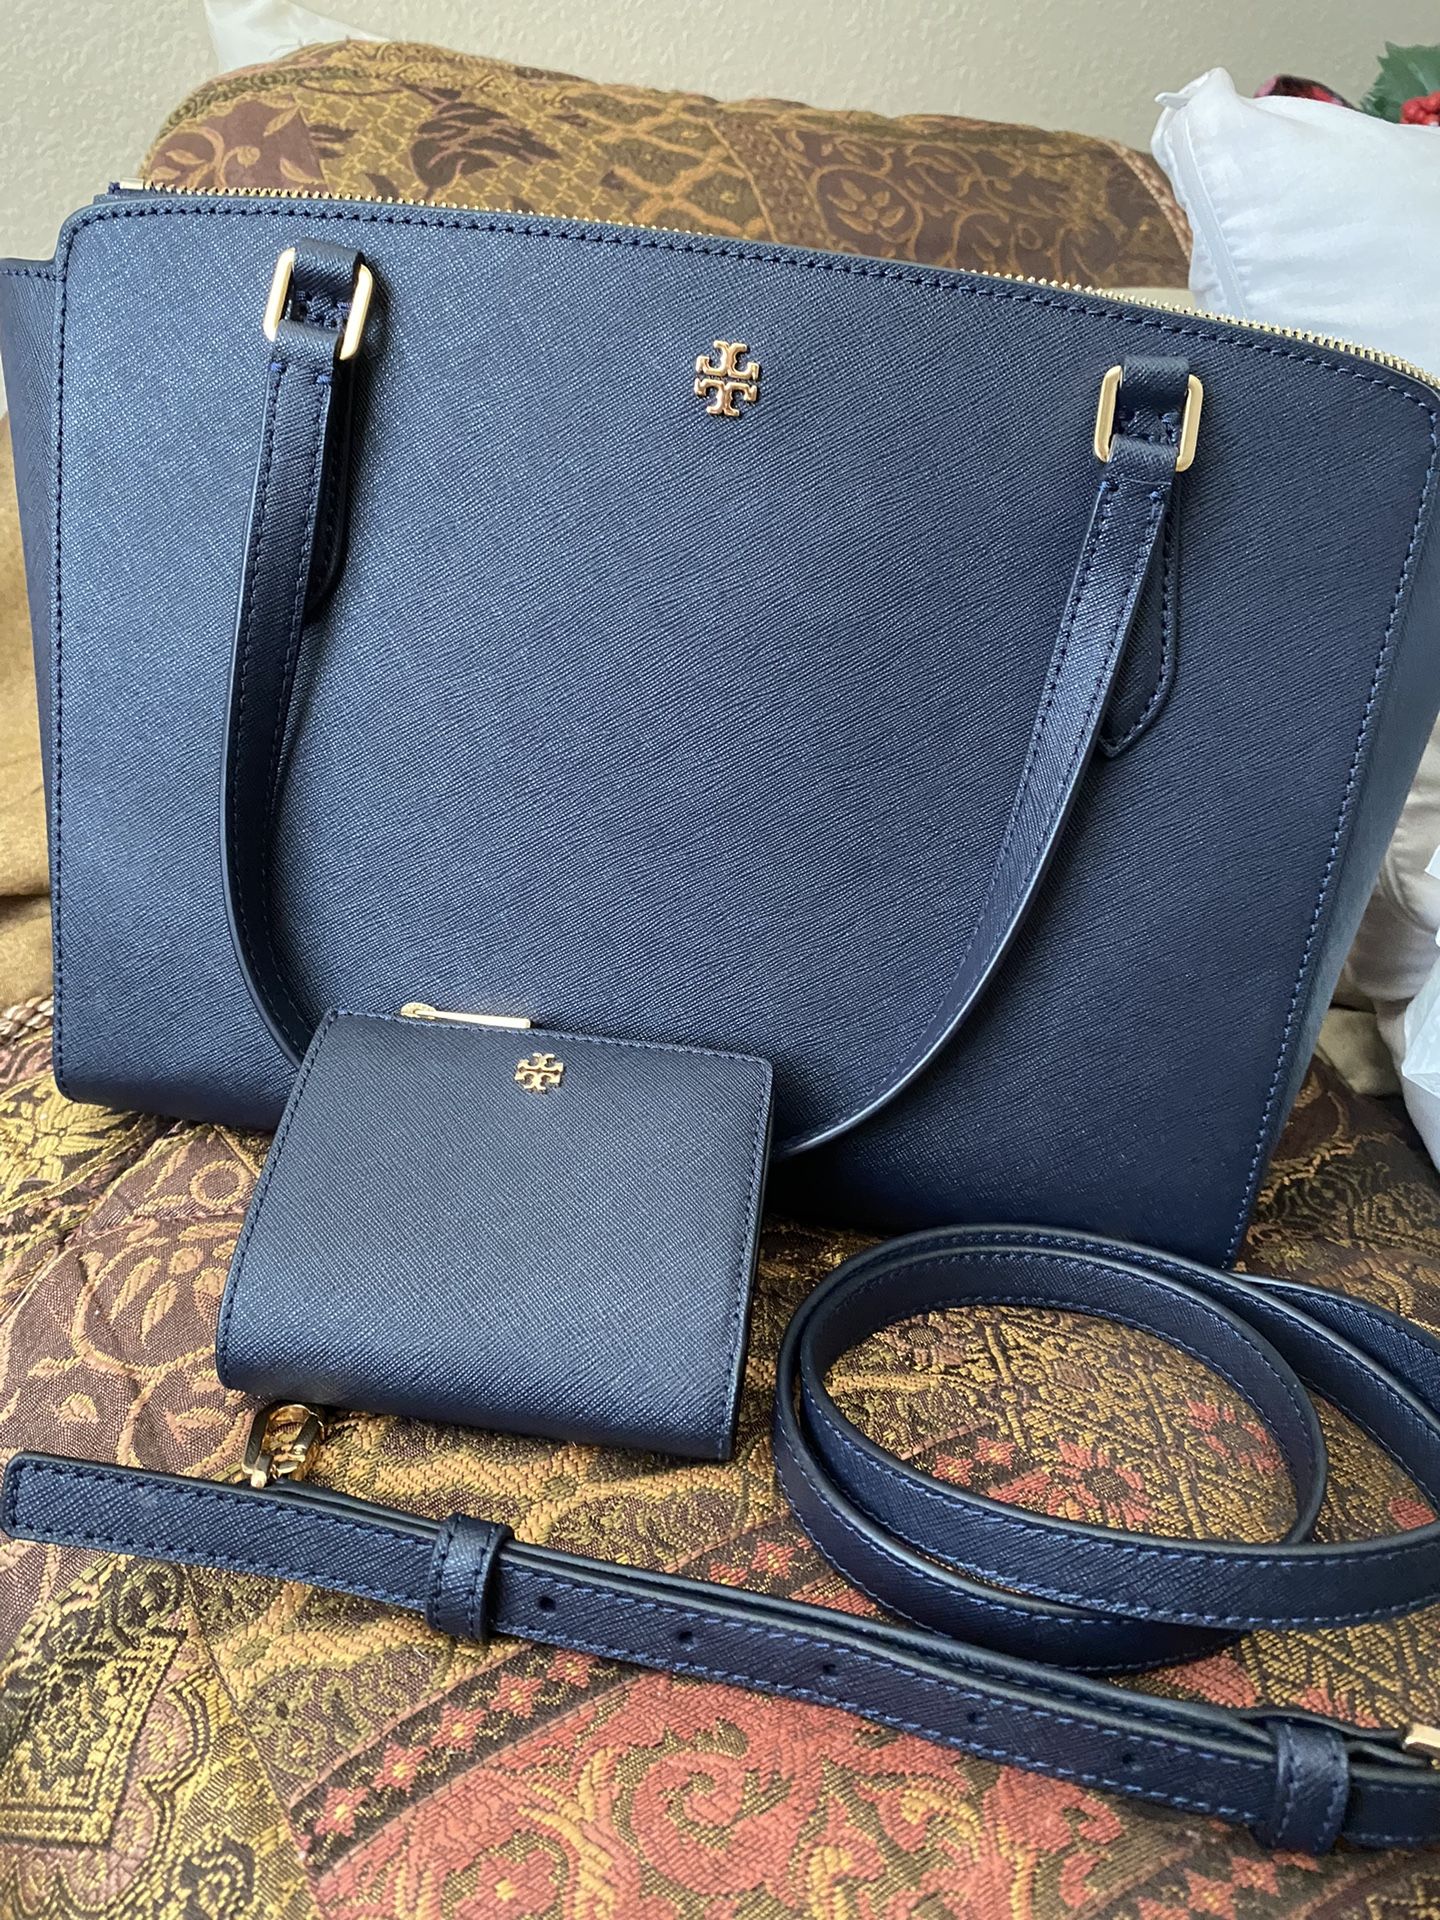 Tory Burch Bag/strap/wallet - Navy Blue Handbag 